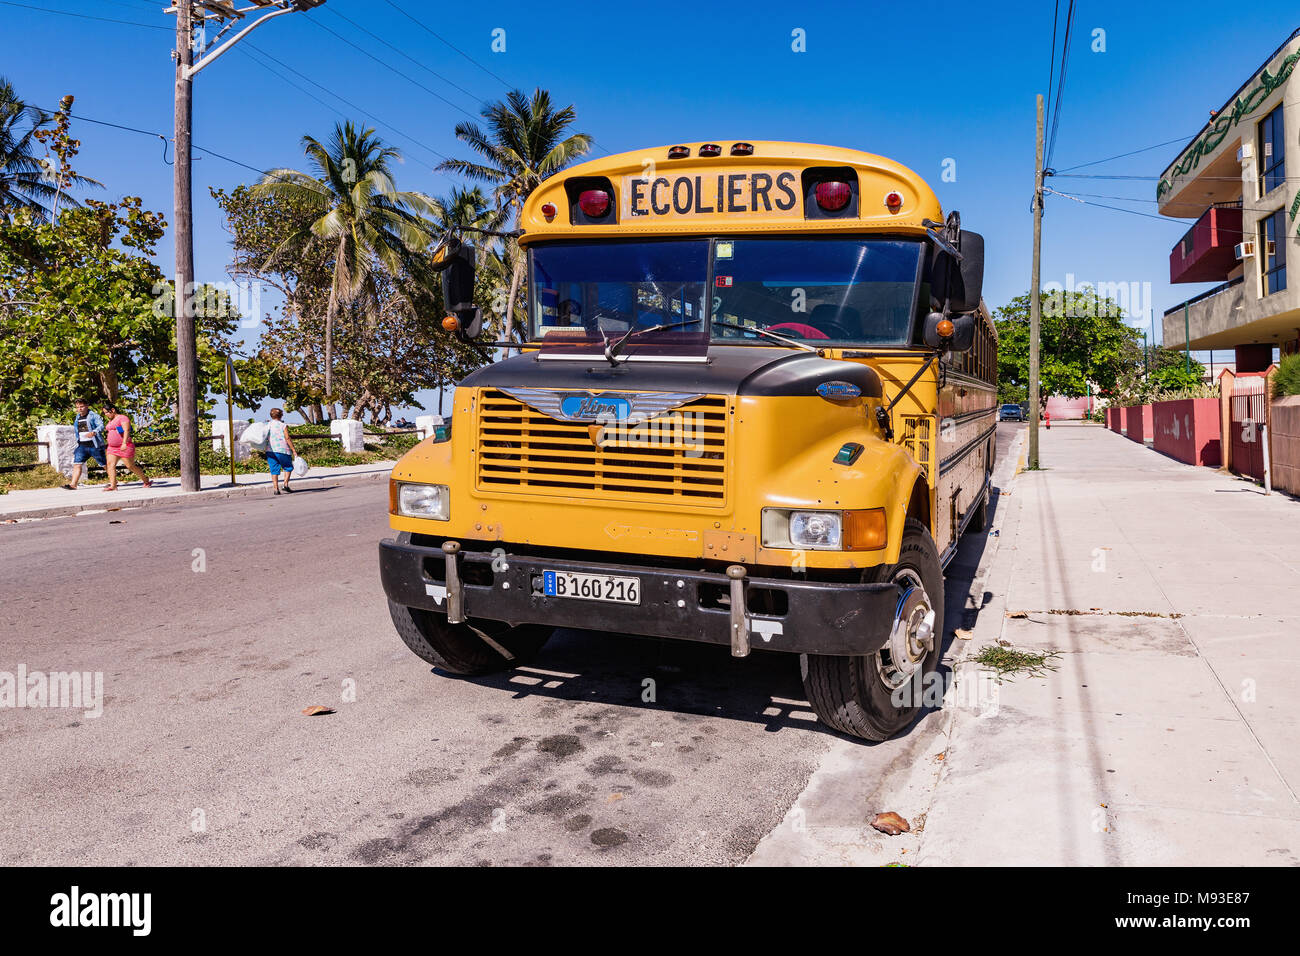 VARADERO, CUBA - Marzo 04, 2018: American School bus en Varadero. Old american school bus en la calle. Cuba. Foto de stock